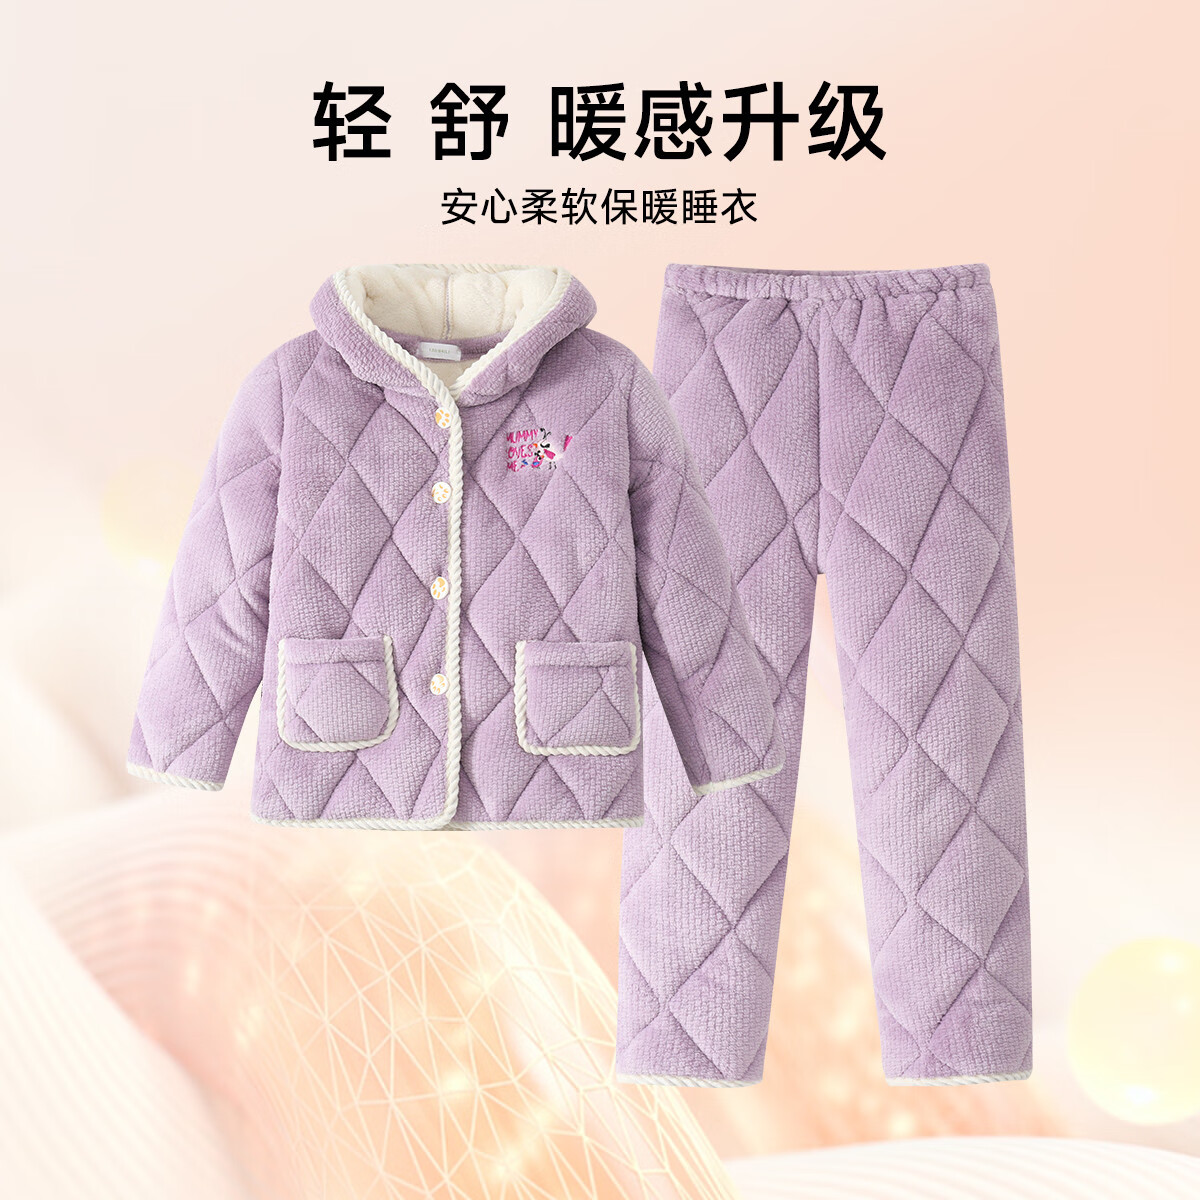 GOSO「三层夹棉加厚」儿童睡衣家居服套装 紫色 XL使用舒适度如何？看完这个评测就知道了！